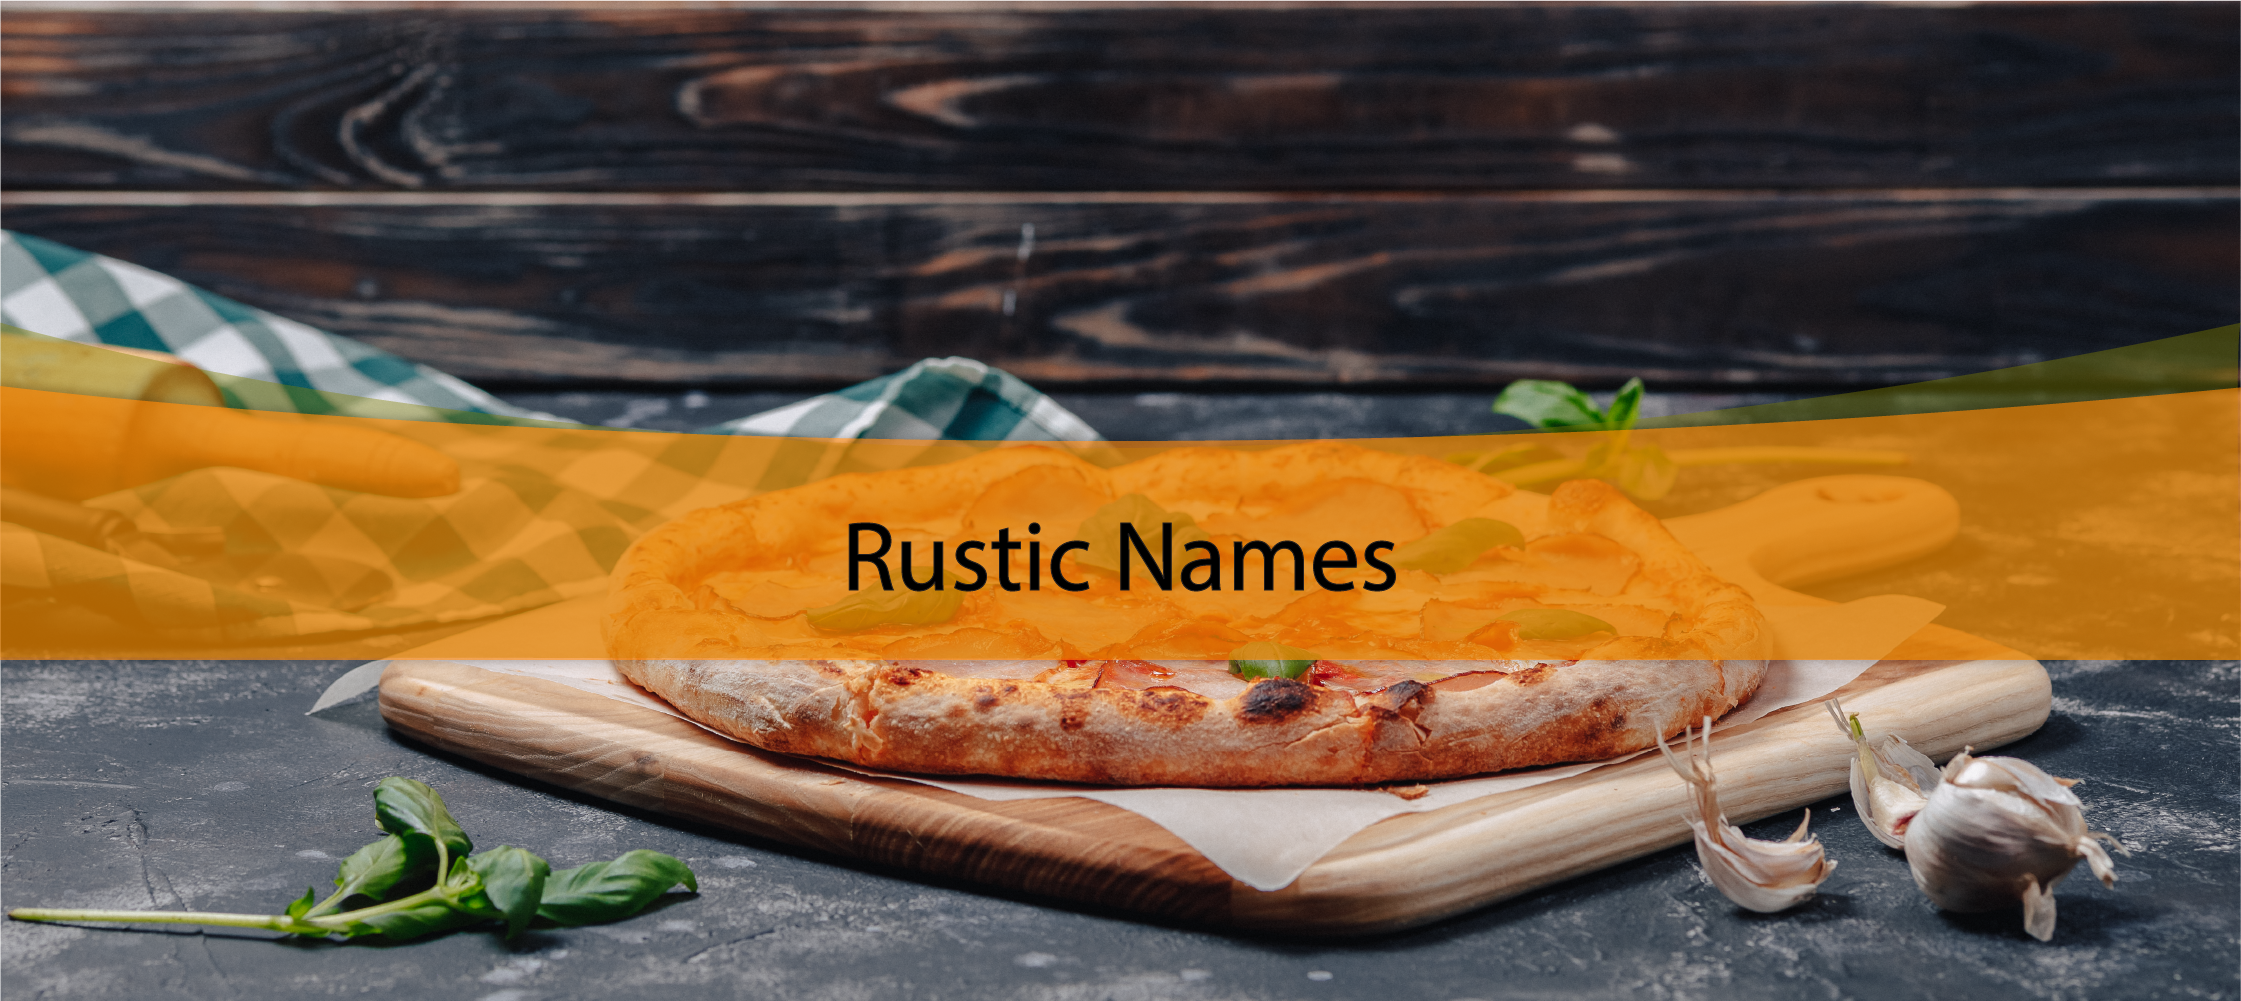 Rustic Names